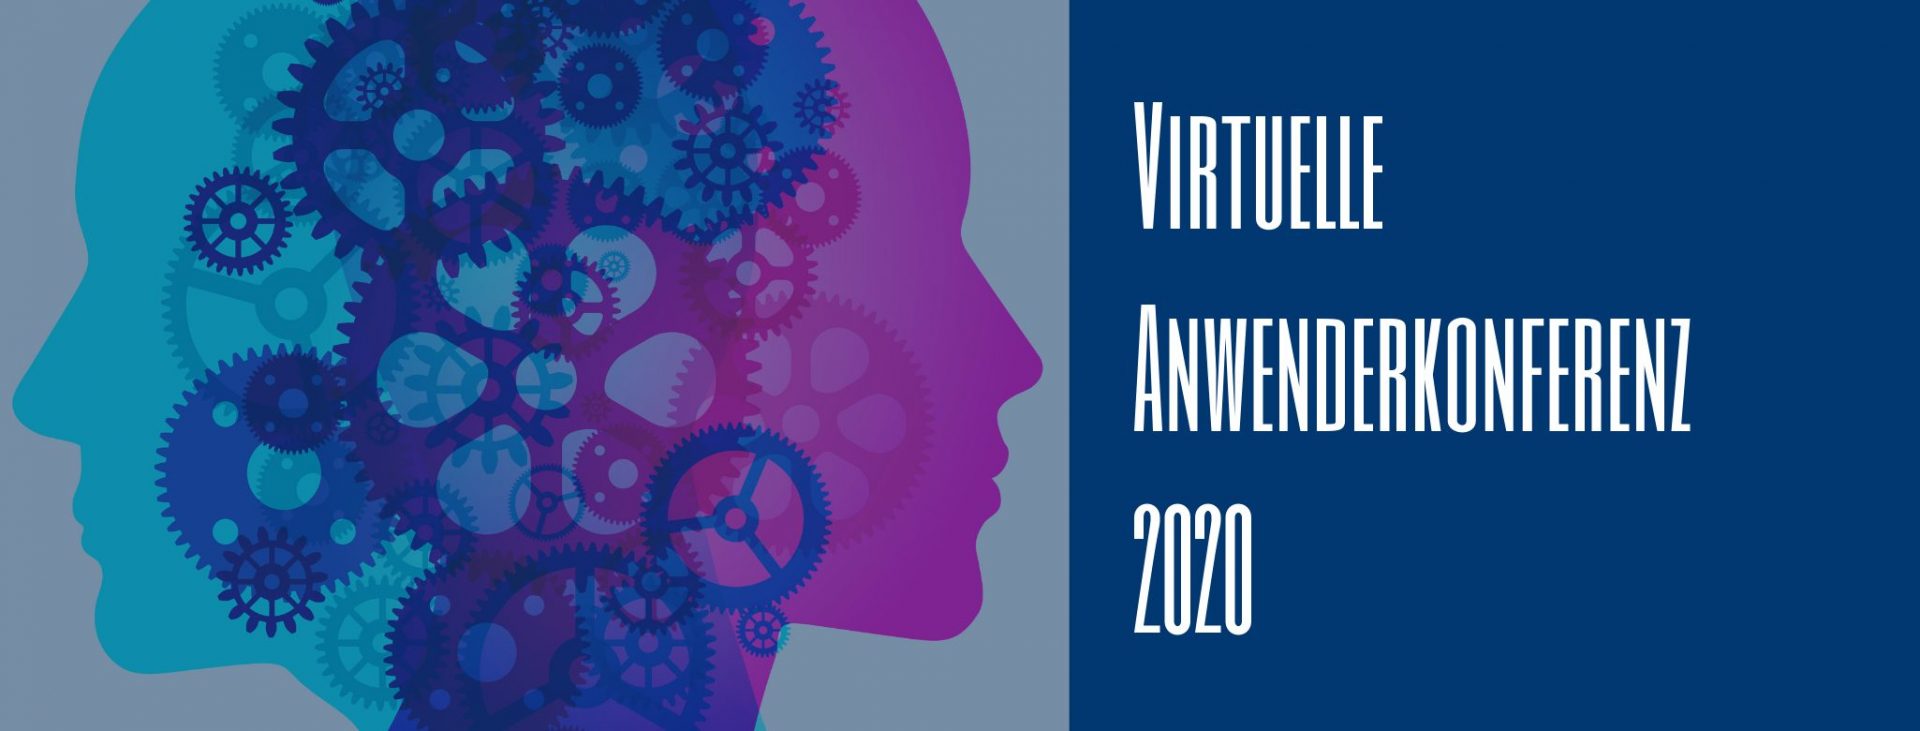 Nissen & Velten Anwenderkonferenz 2020